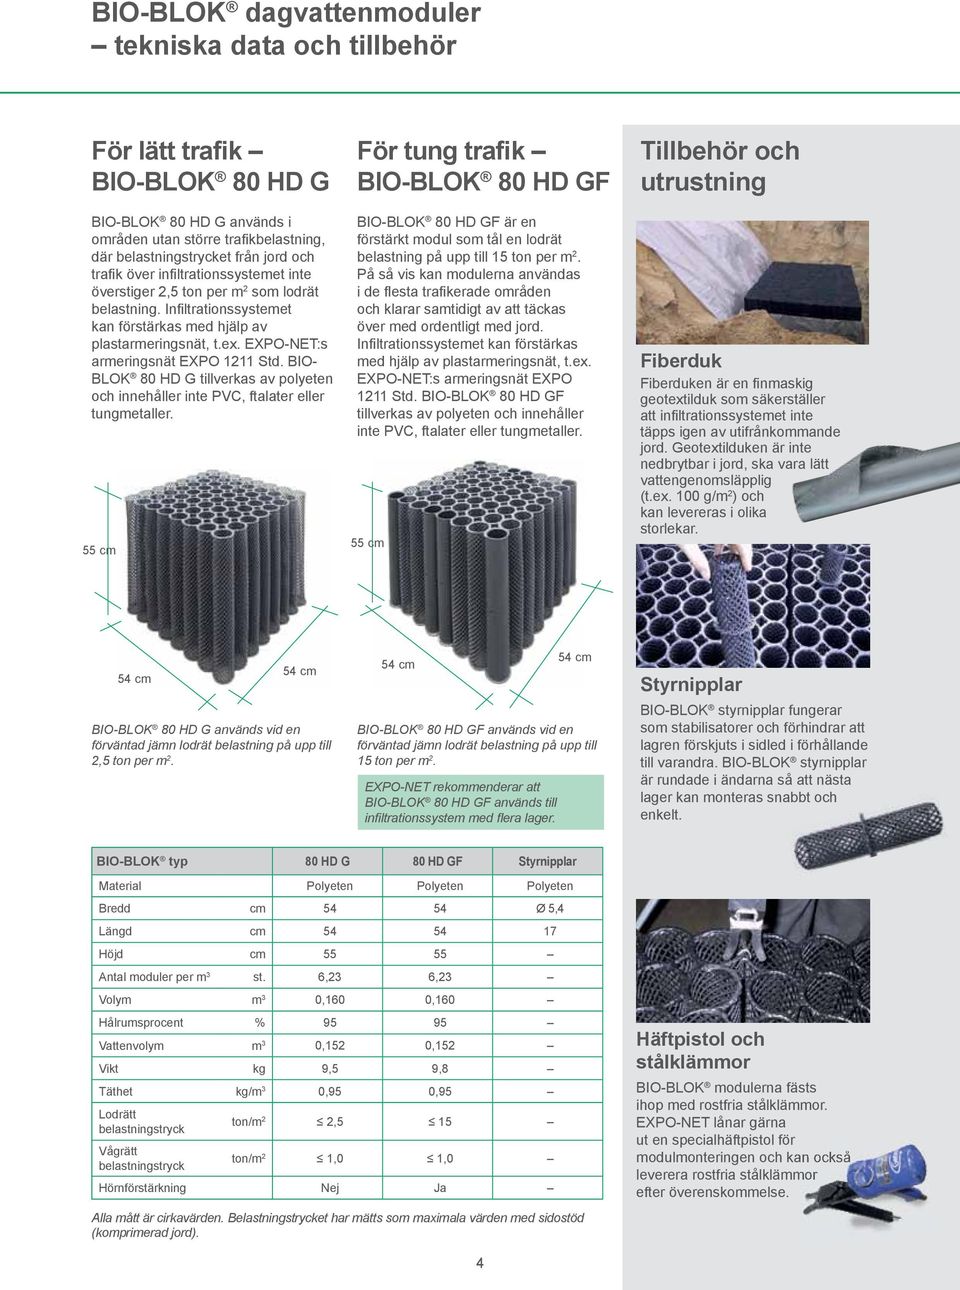 BIO- BLOK 80 HD G tillverkas av polyeten och innehåller inte PVC, ftalater eller tungmetaller.